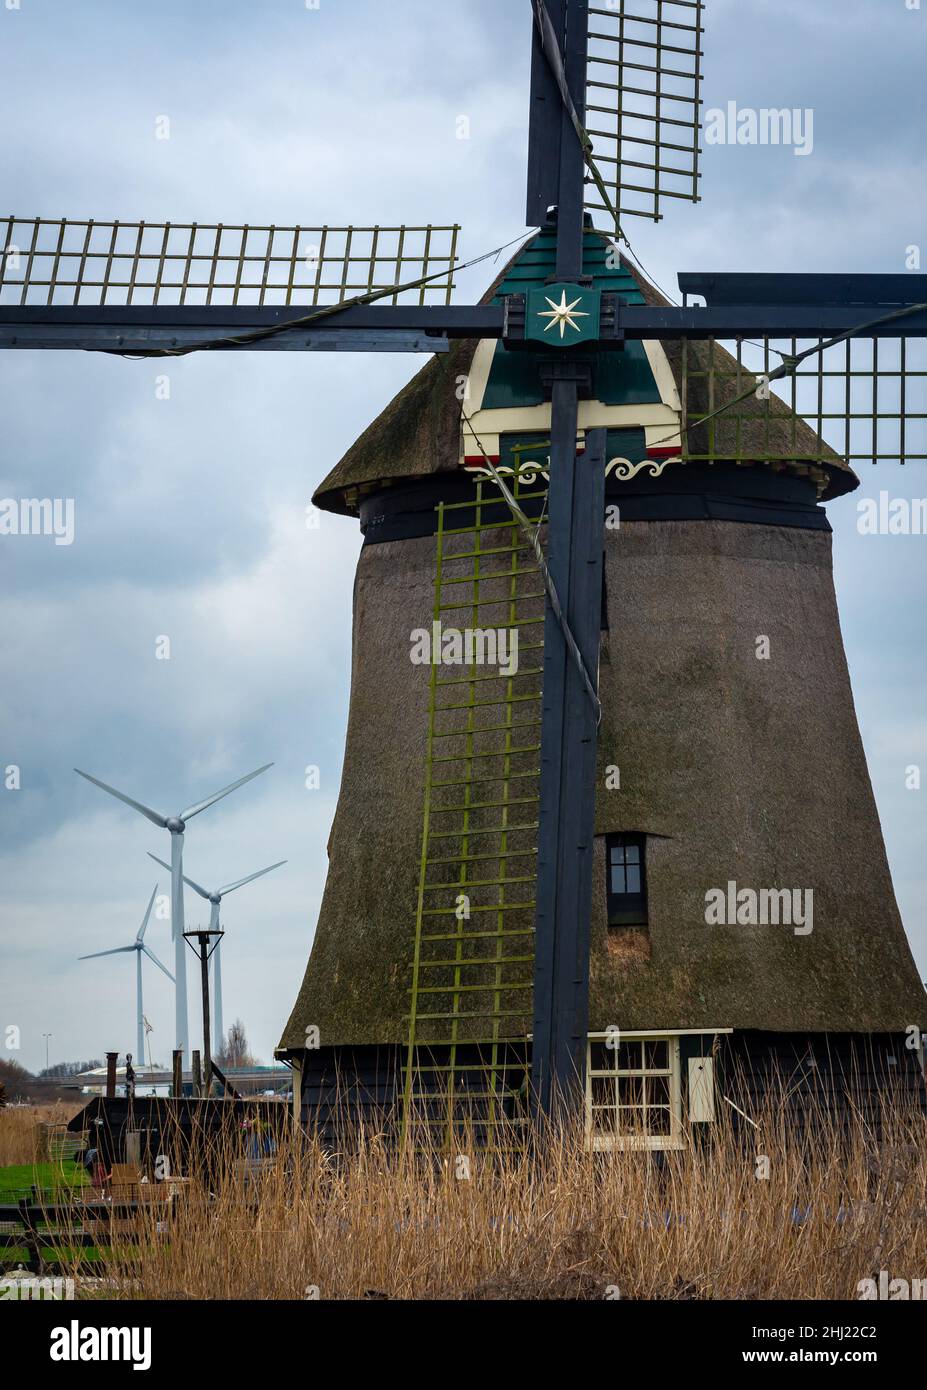 Moulin historique hollandais devant les éoliennes modernes, comparaison des technologies anciennes et nouvelles Banque D'Images